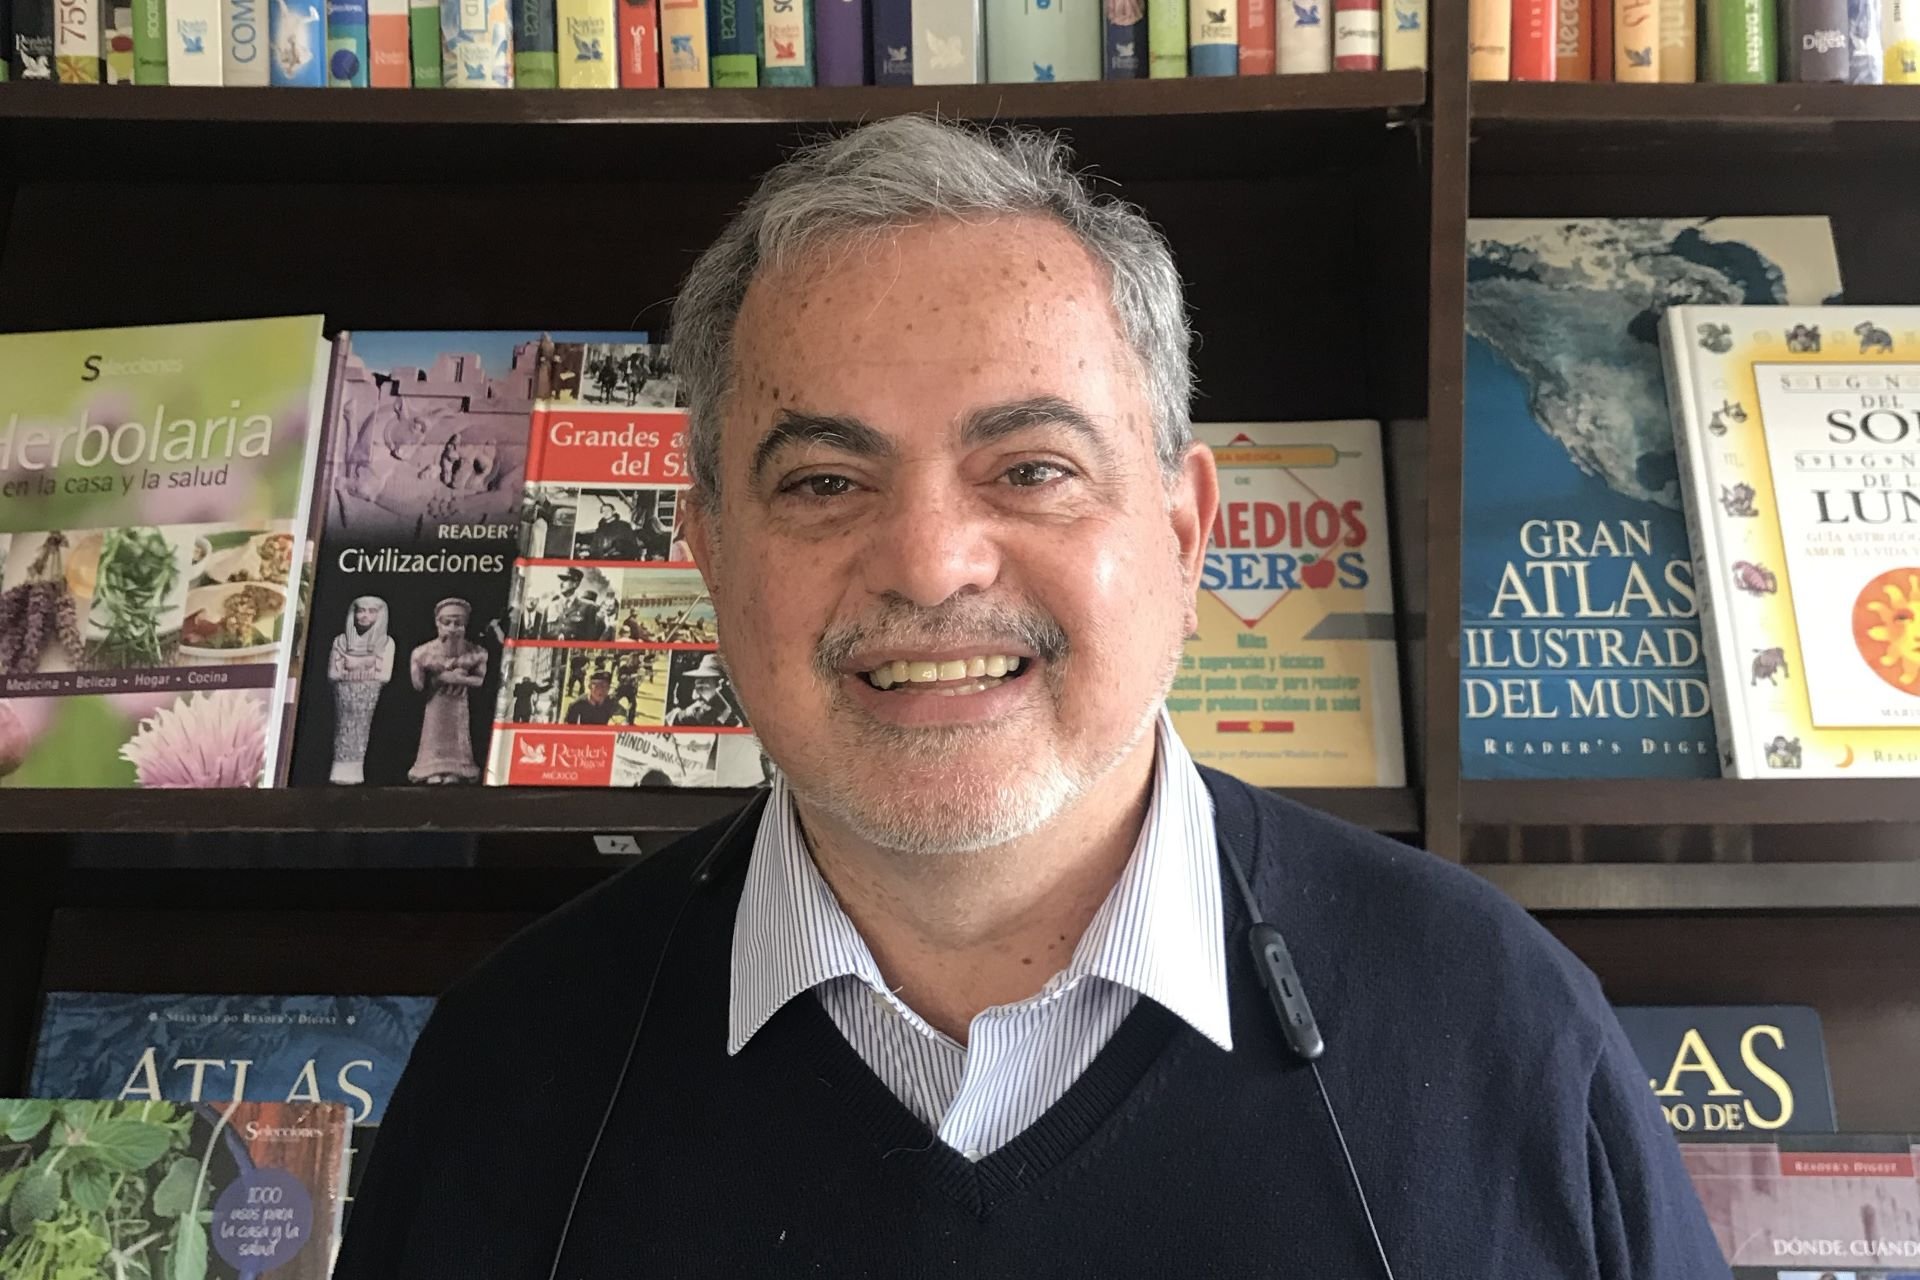 Da Argentina à América Latina, passando pela Europa e Estados Unidos: livros personalizados, a nova aposta da One Minetta